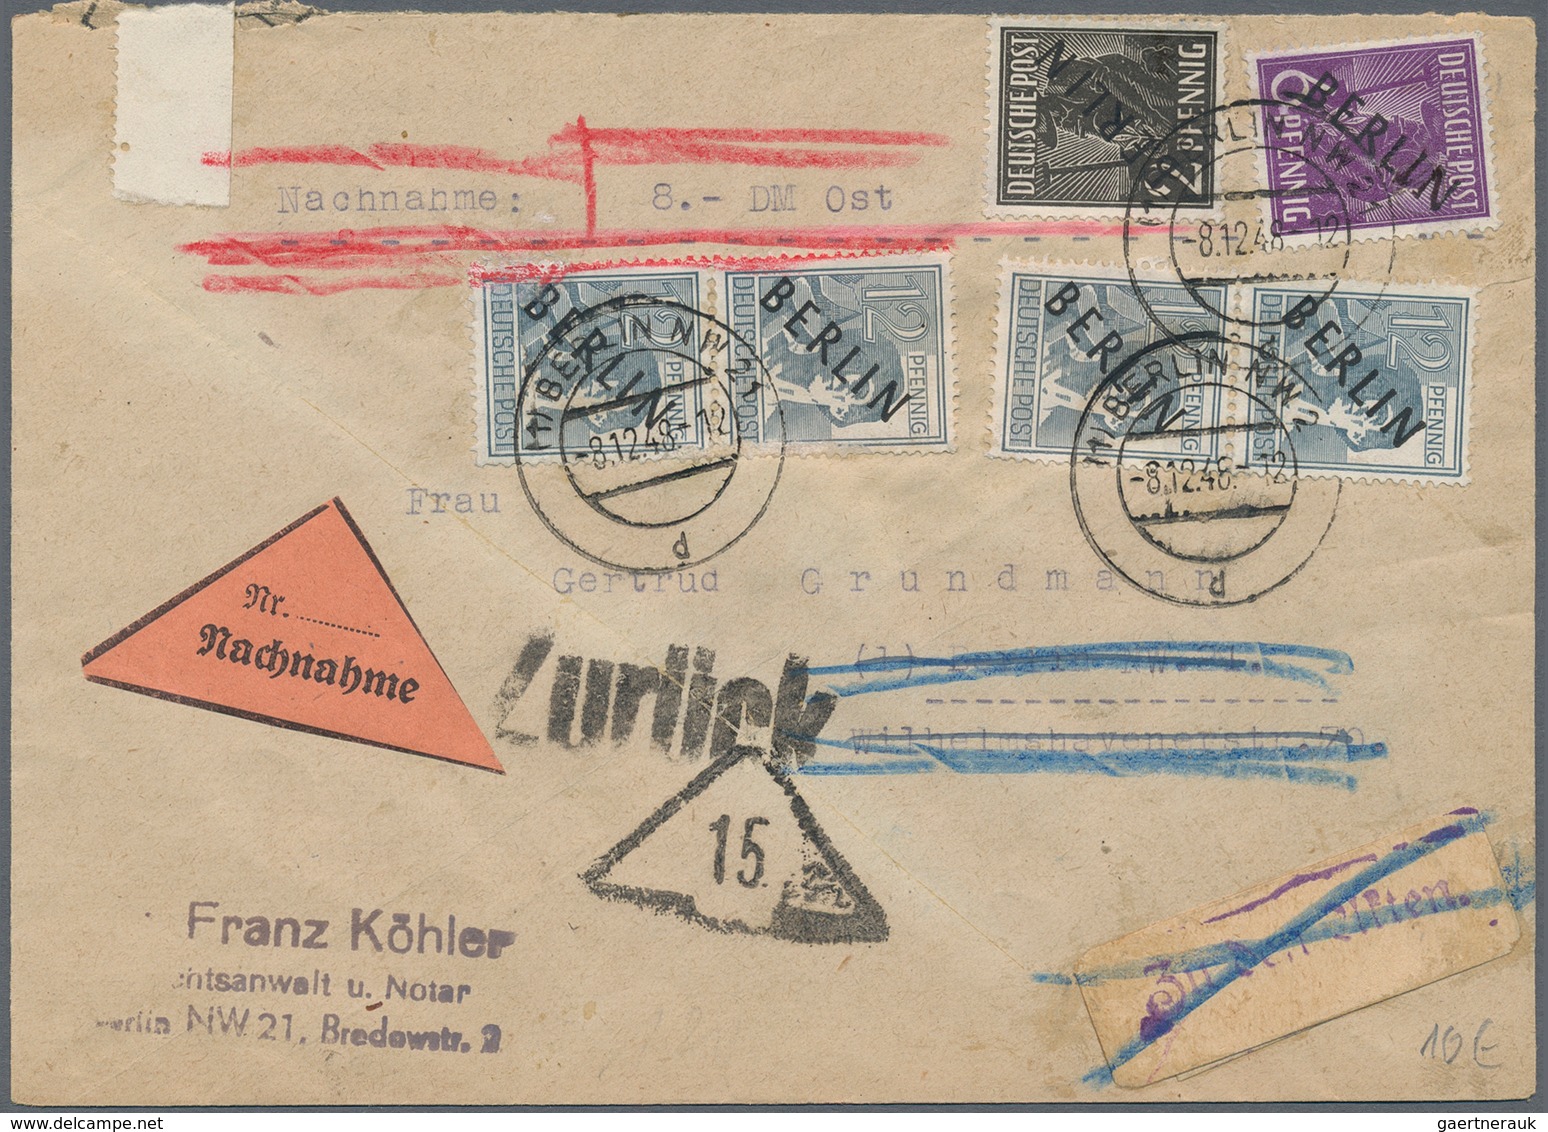 Berlin: 1948-1990, netter Posten mit rund 250 Briefen, Belegen und Ganzsachen, ab den Aufdruck-Ausga